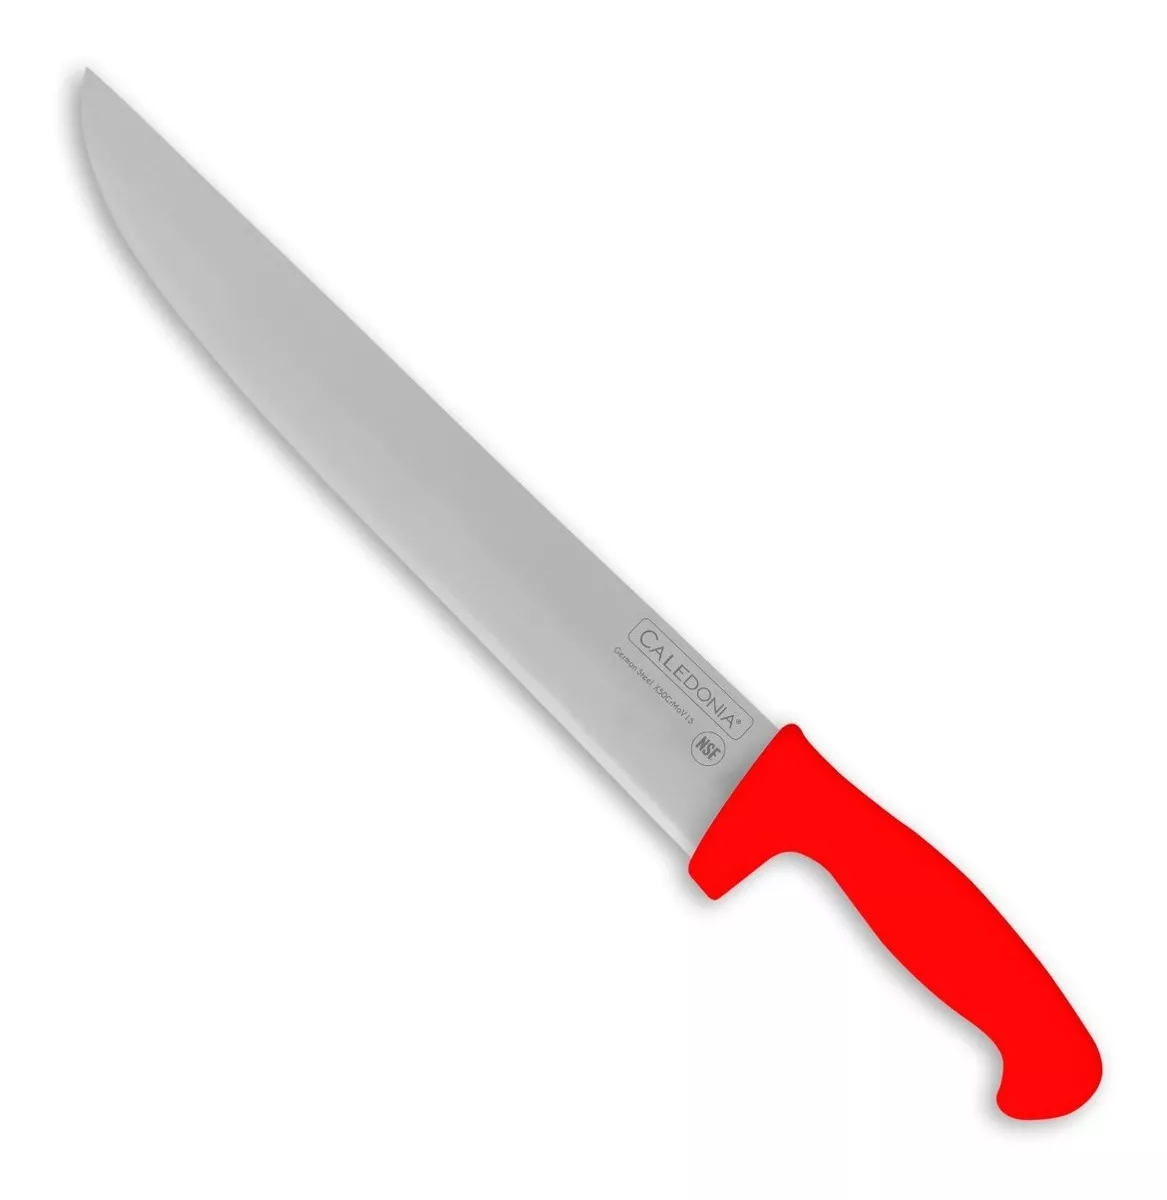 Segunda imagen para búsqueda de cuchillos